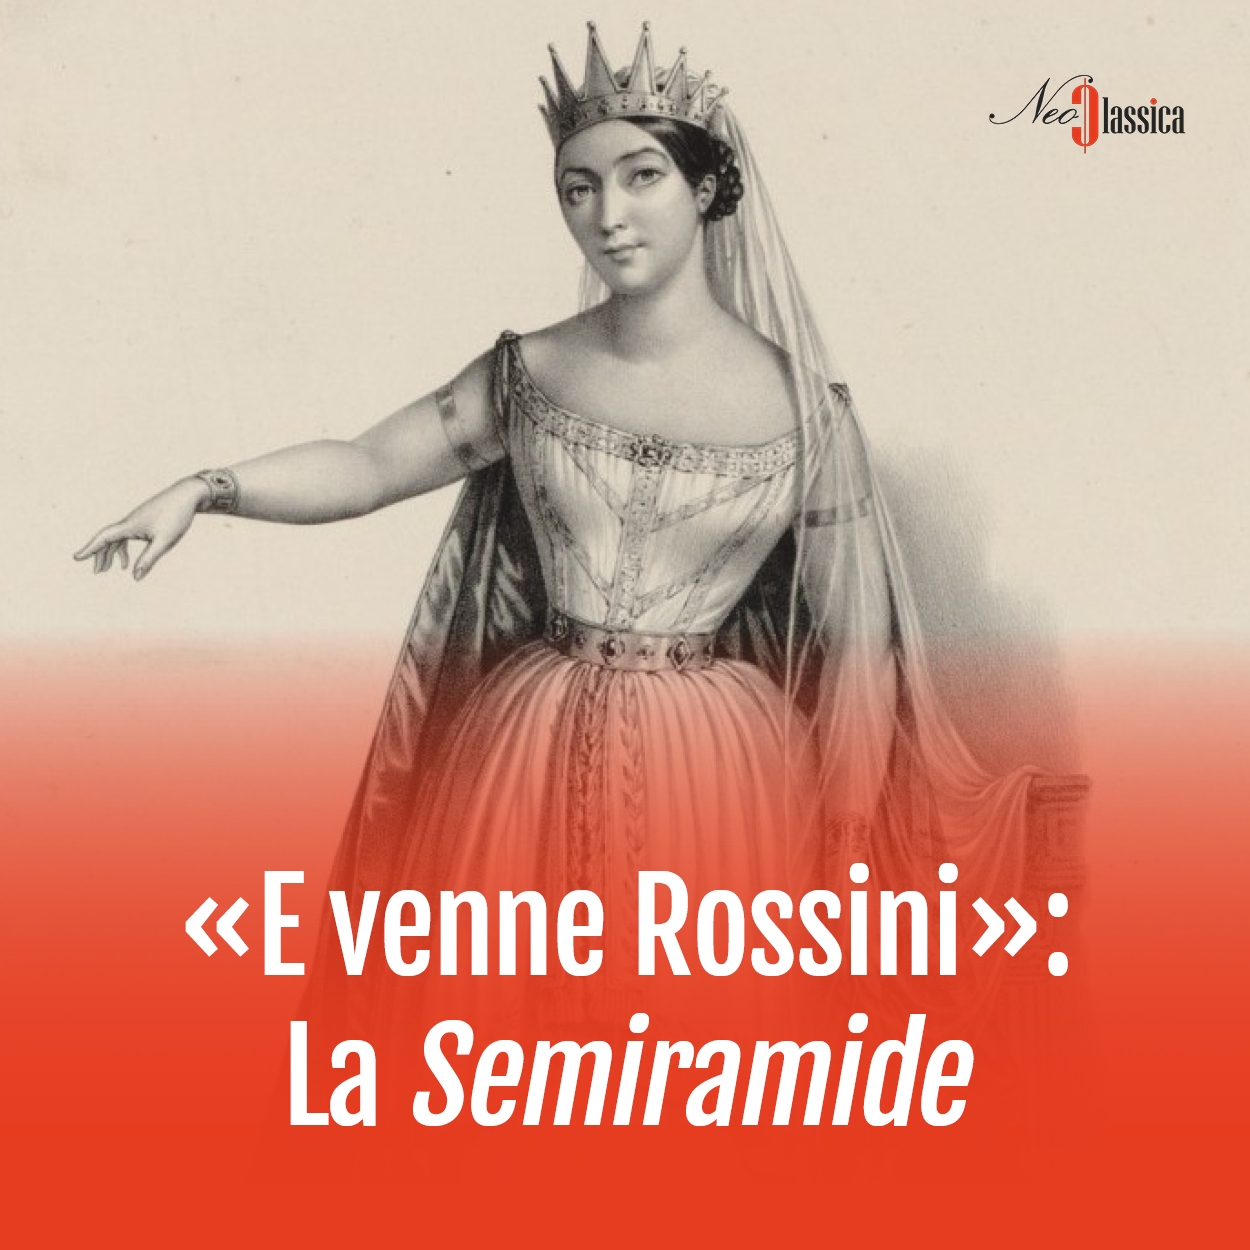 Semiramide Rossini